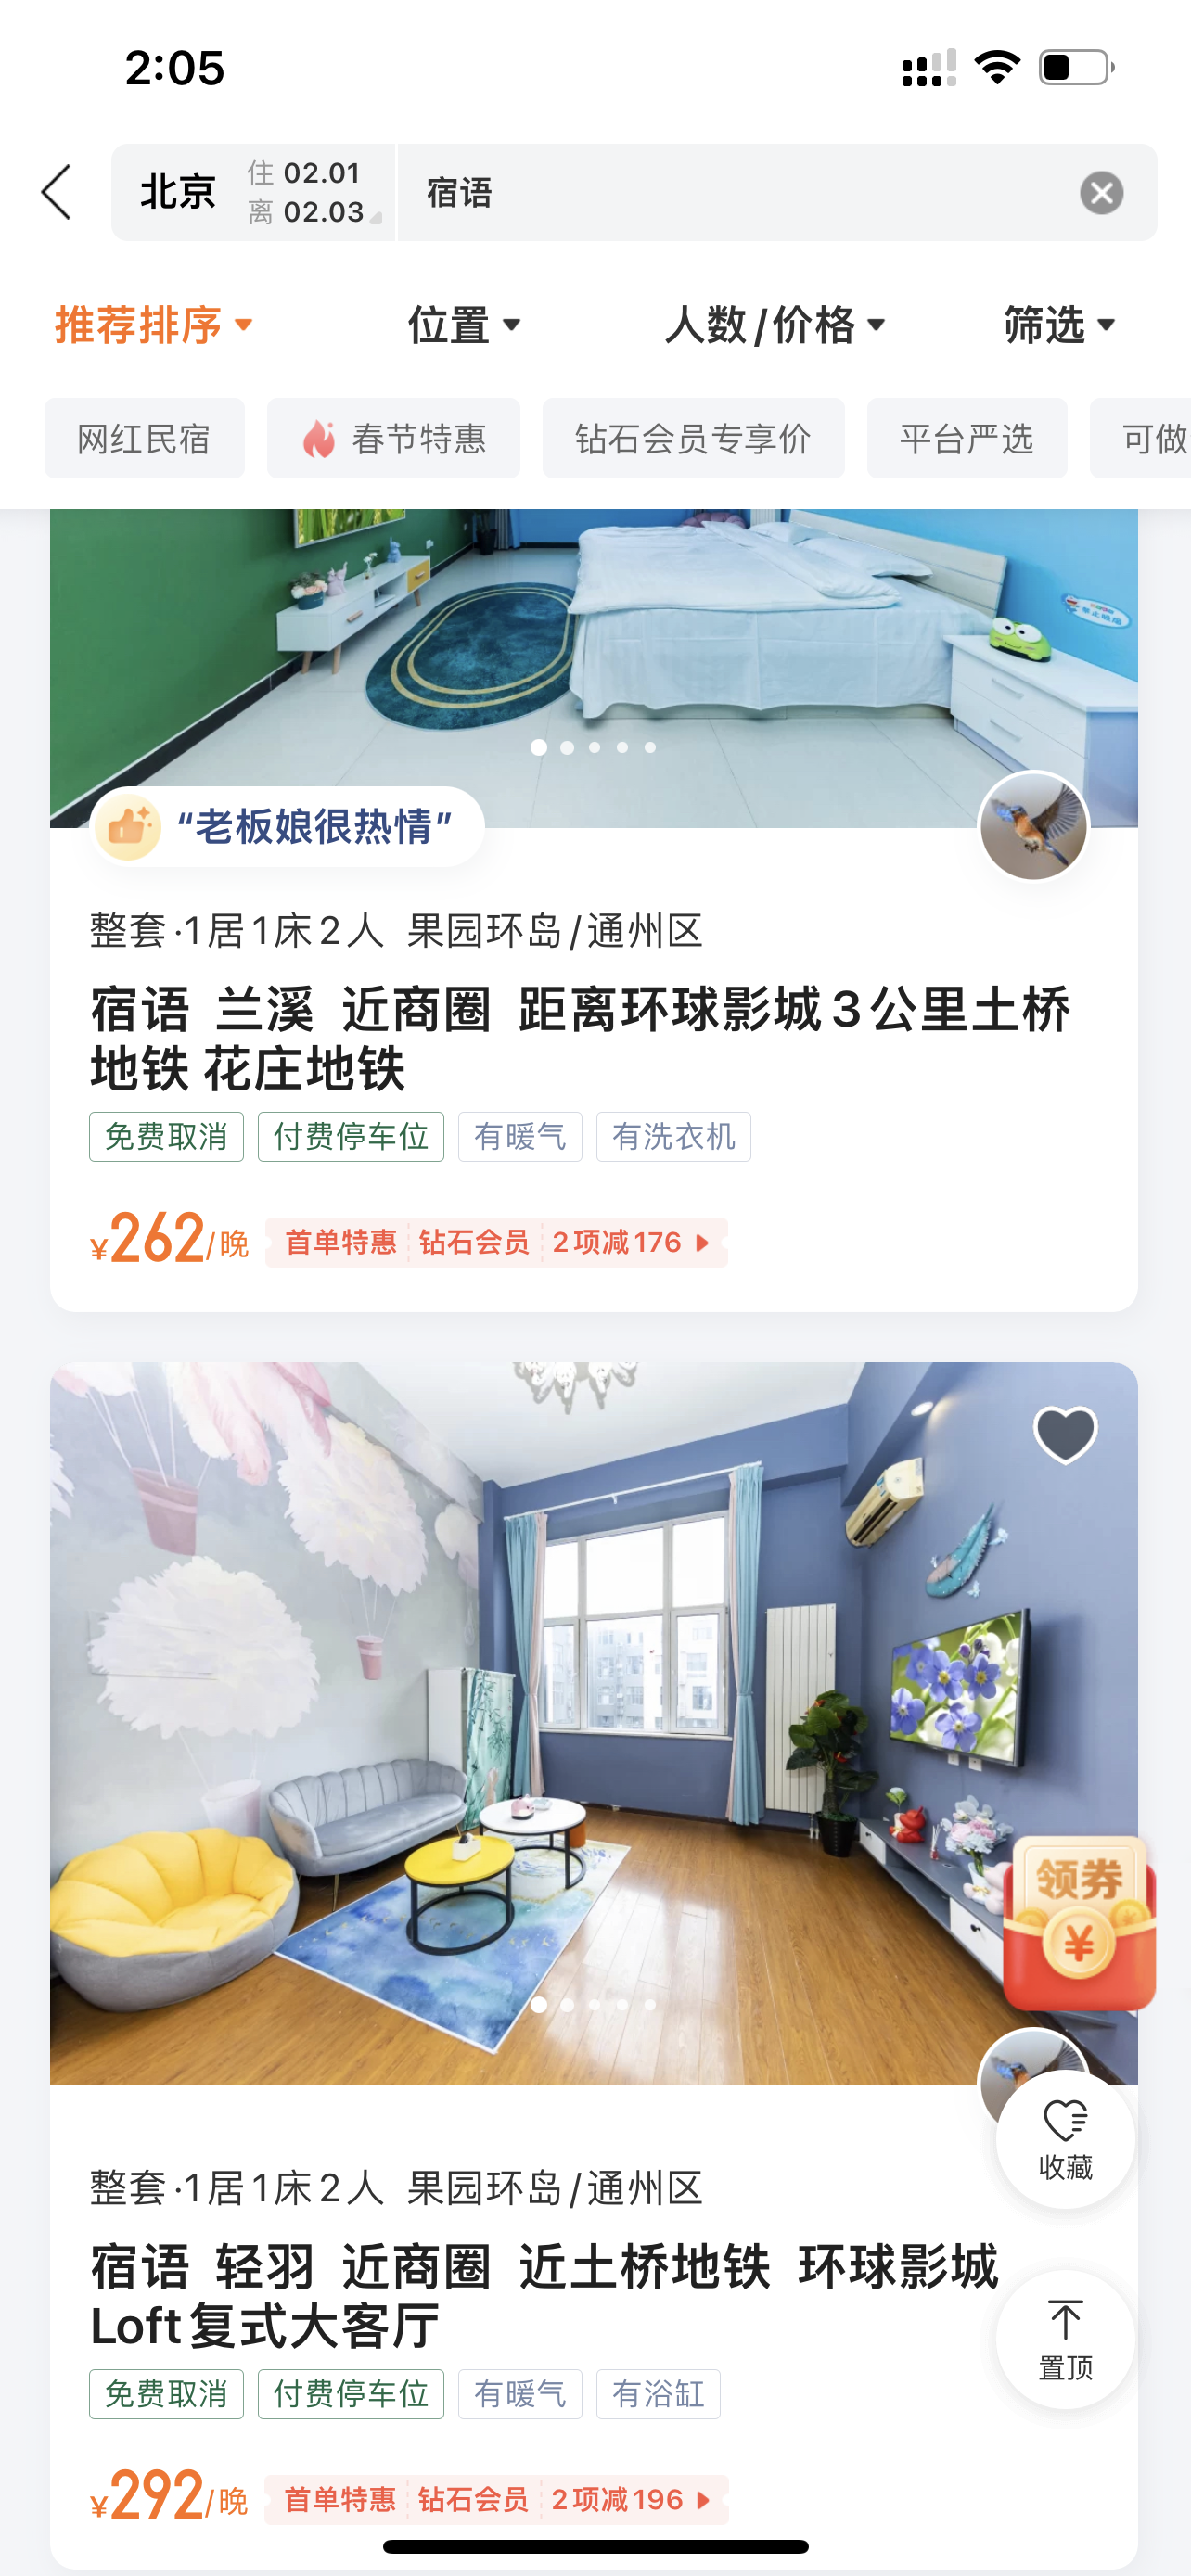 北京通州部分下架民宿经审核重新上架，半天内已有房源被预订